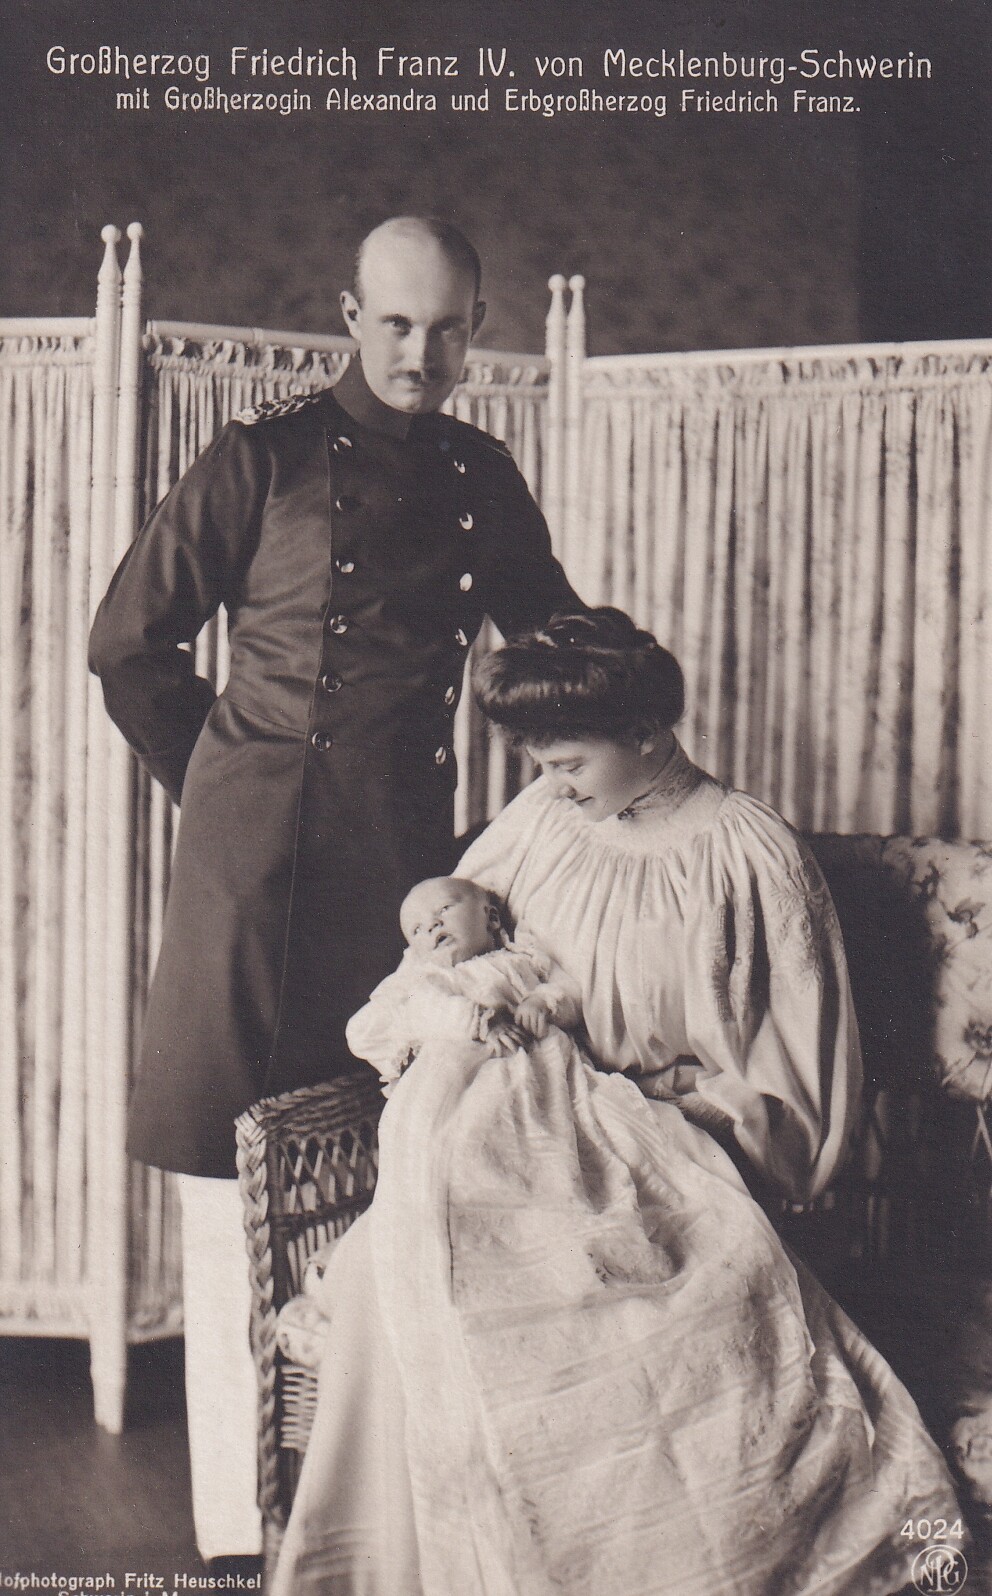 Bildpostkarte mit Foto der Familie des Großherzogs Friedrich Franz IV. von Mecklenburg-Schwerin, 1910 (Schloß Wernigerode GmbH RR-F)